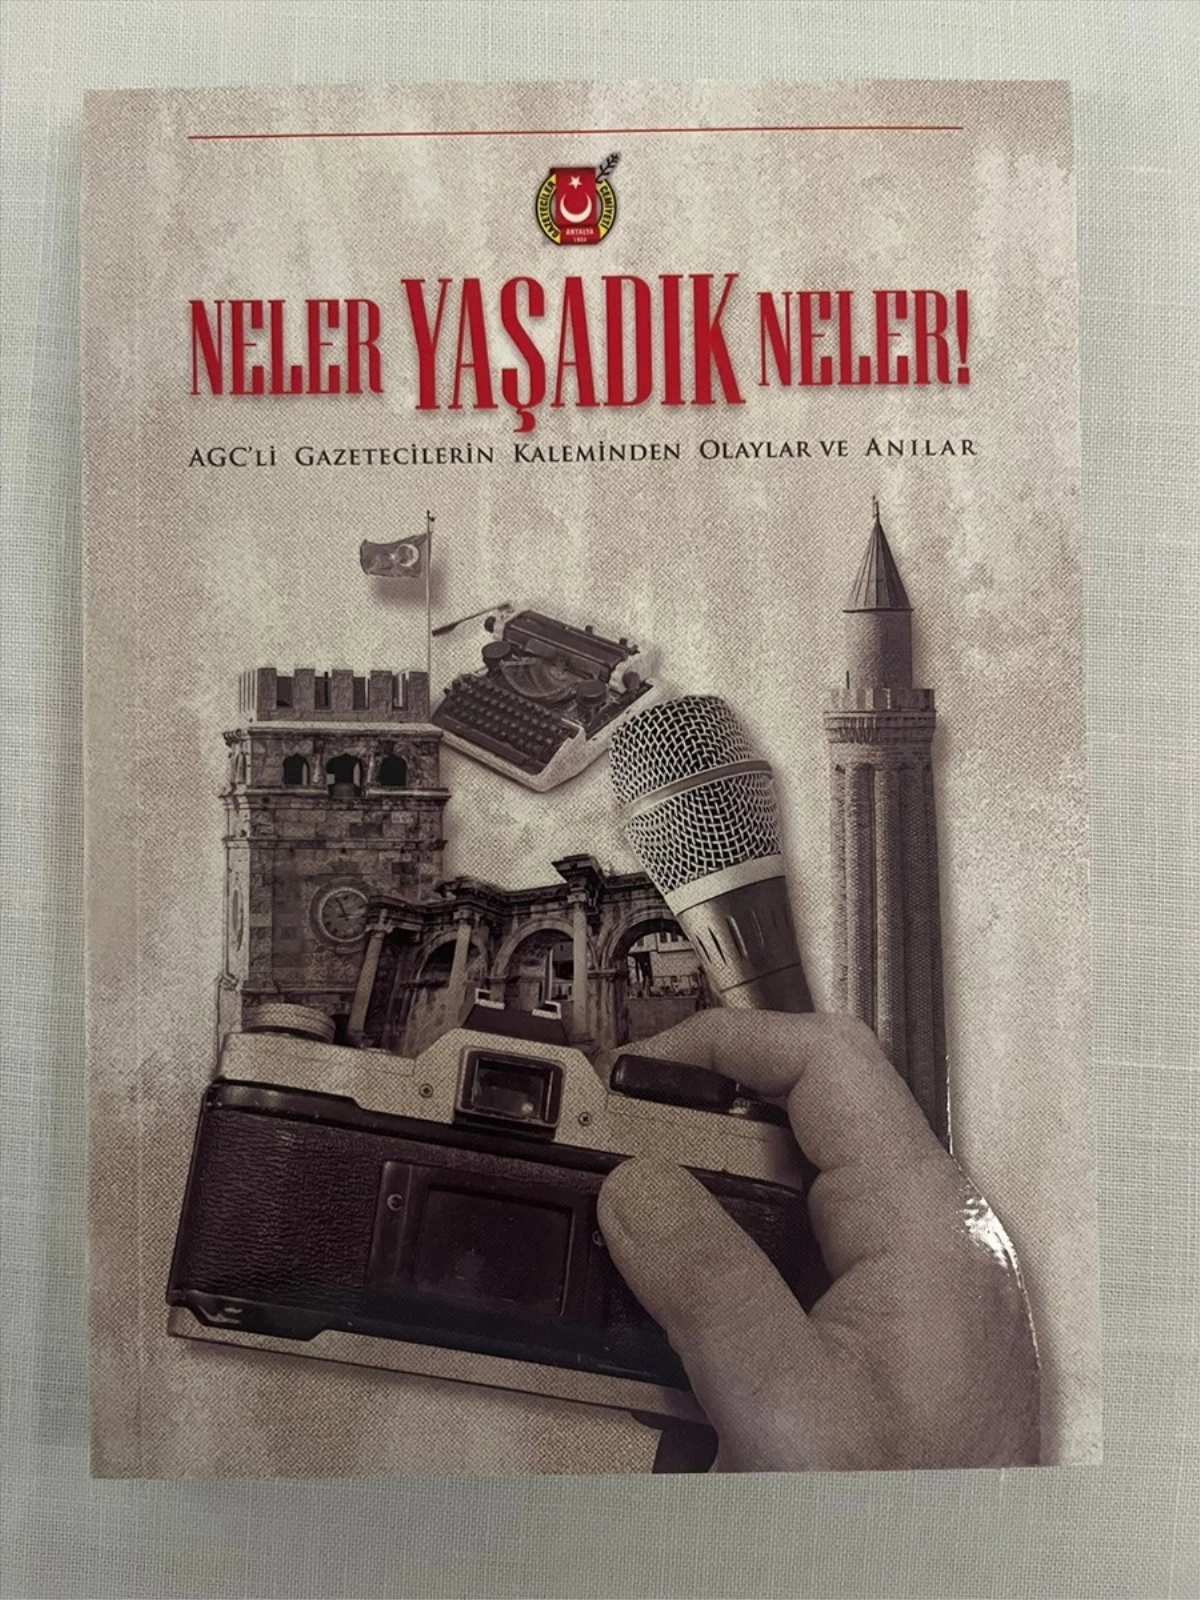 Antalya Gazeteciler Cemiyeti, \'Neler Yaşadık Neler\' adlı kitabı tanıttı